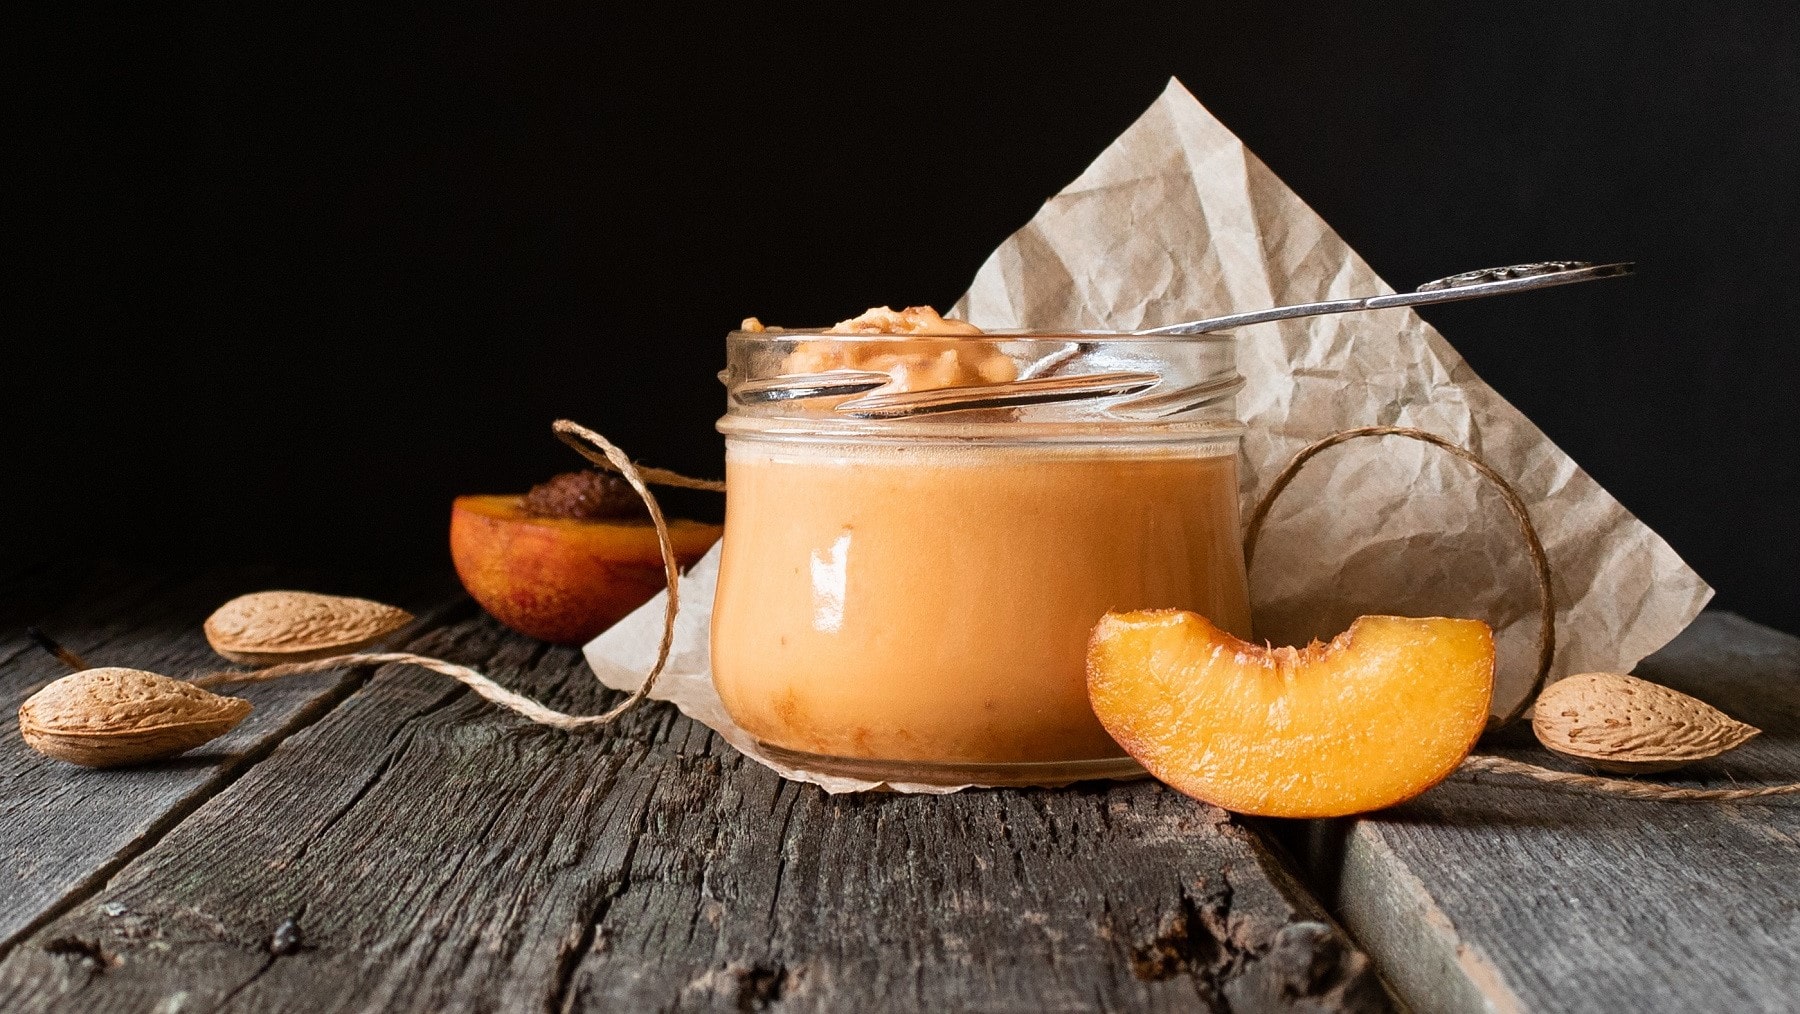 Honig-Creme mit Aprikosen und Mandelmus, serviert in einem kleinen Dessertglas auf einem rustikalen Holztisch.